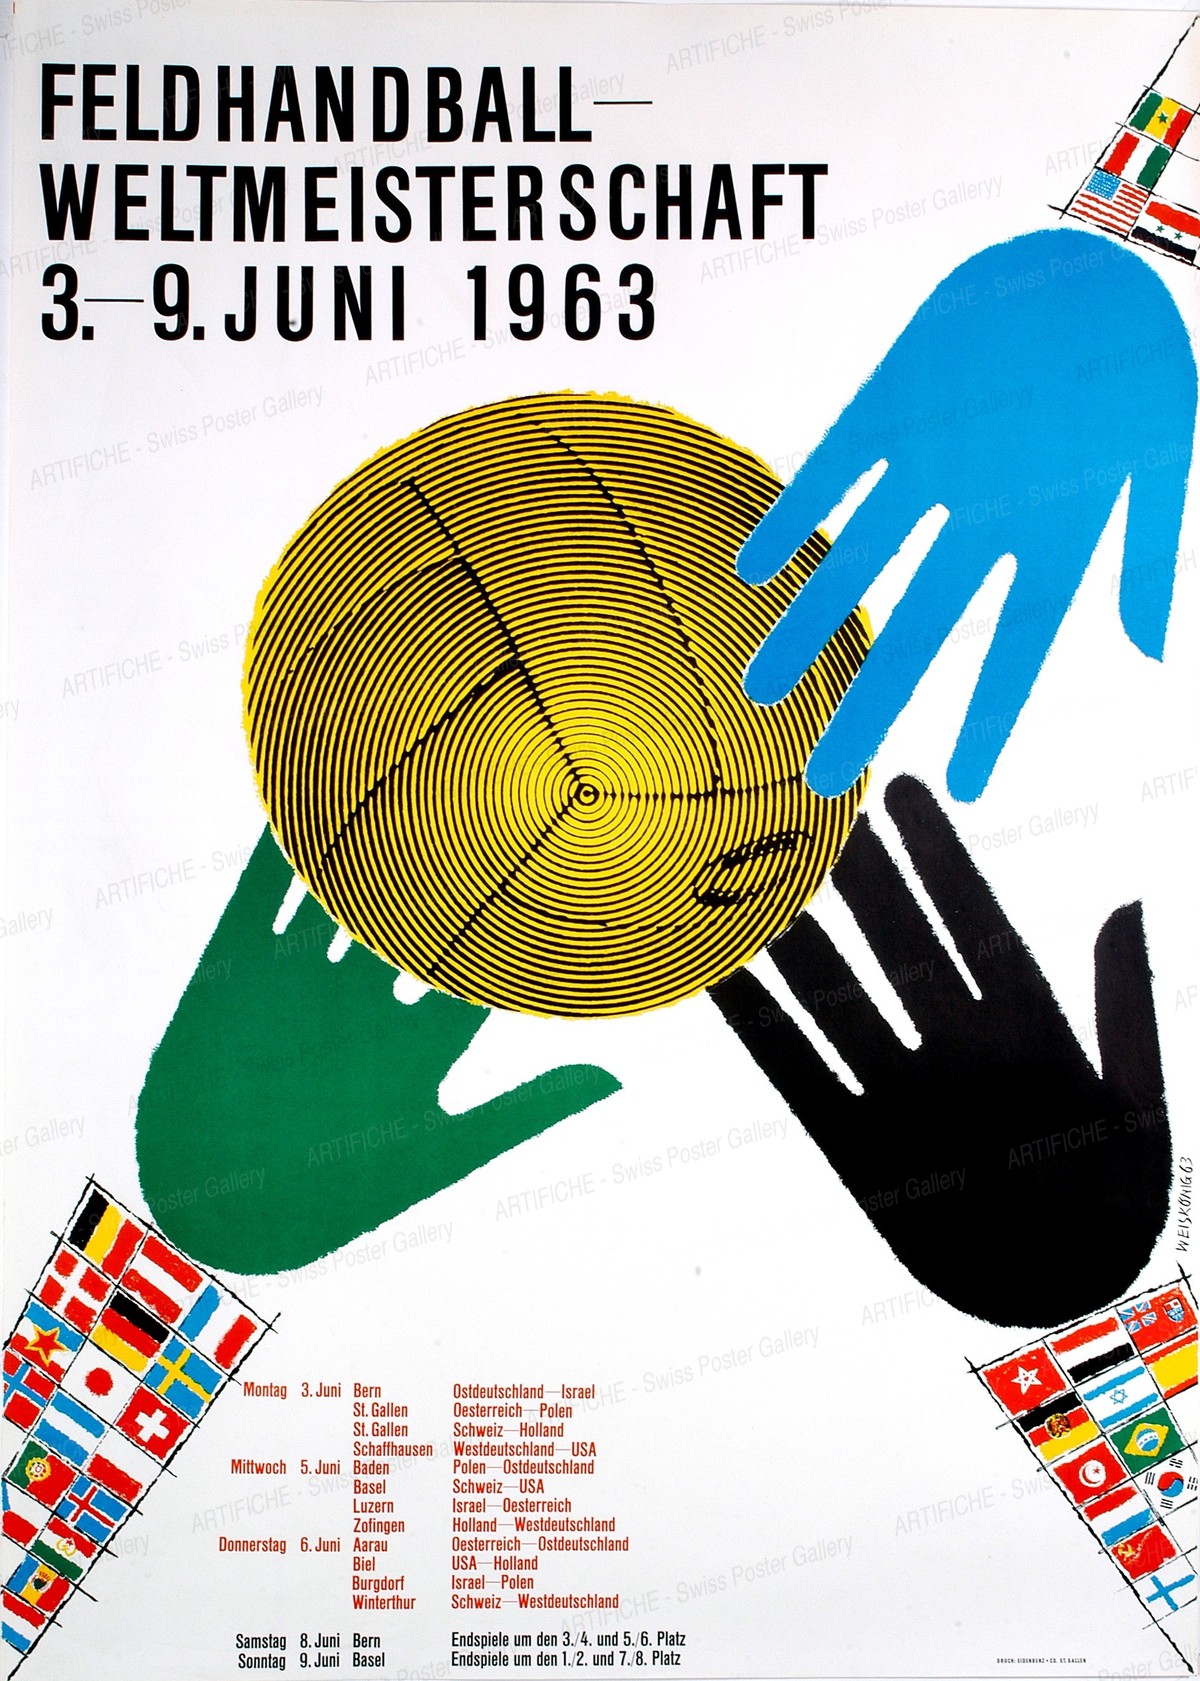 Field handball world championship 1963, Werner Weiskönig